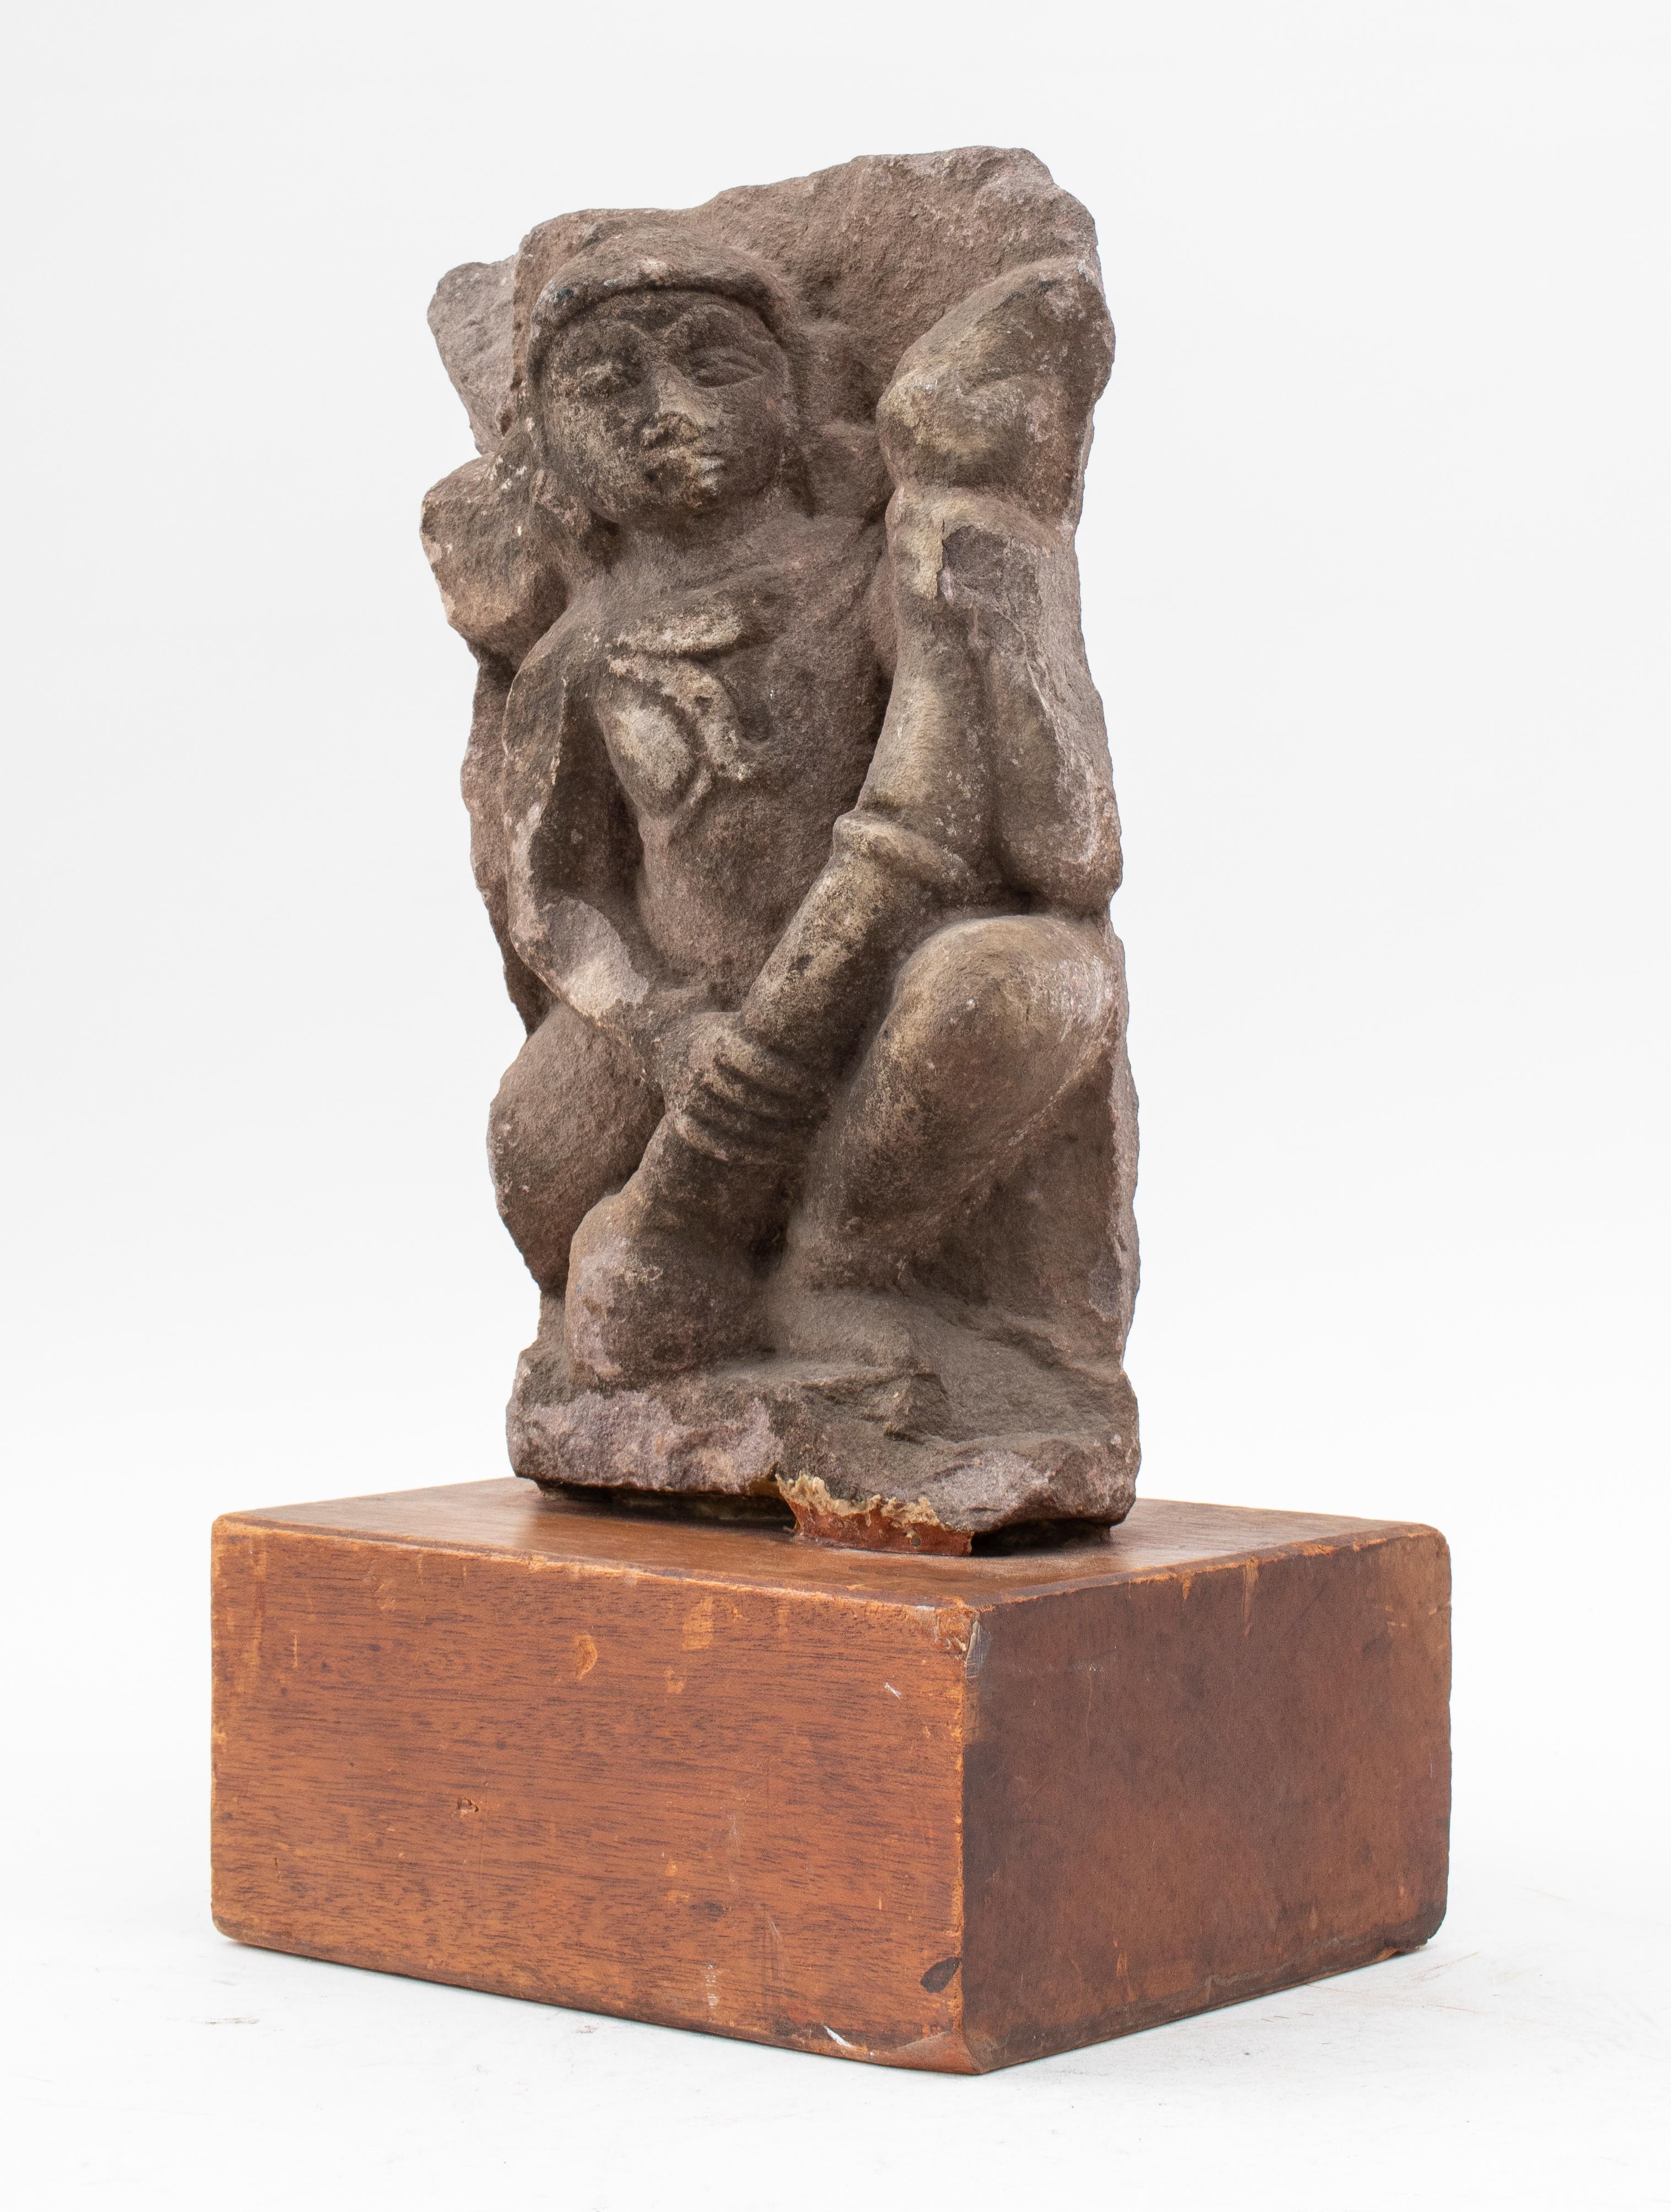 Cette sculpture indienne ancienne en pierre représentant Shiva fait probablement partie d'une grande sculpture ancienne d' idole d'autel ornée de plusieurs divinités, aujourd'hui montée sur un support en bois dur. 
Mesures : hauteur 46,25 cm x